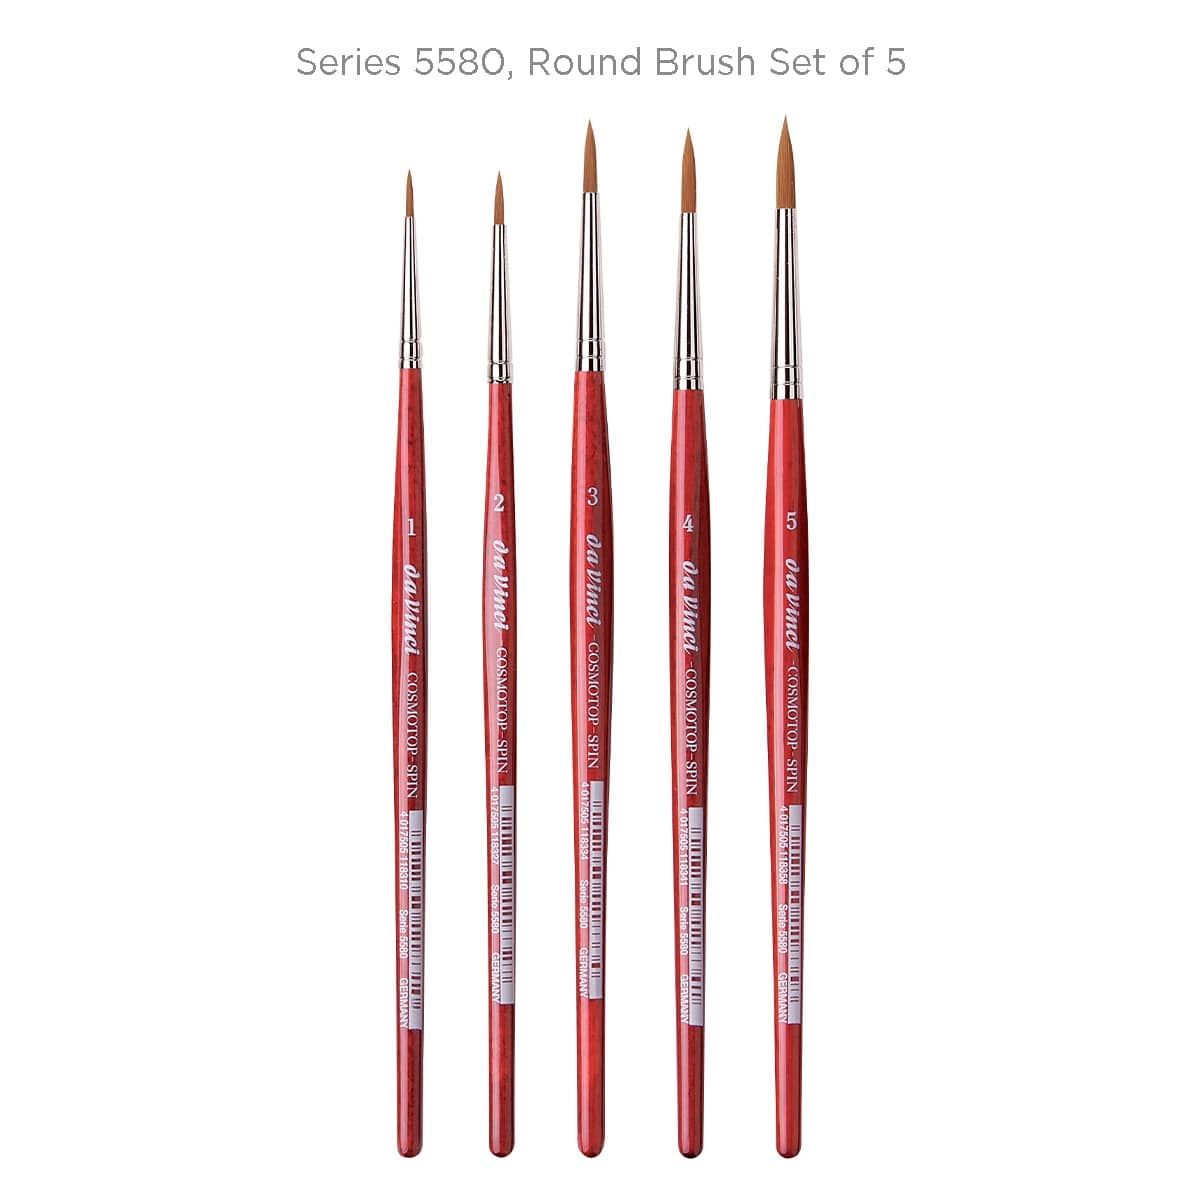 Series 5580, Round Brush Set of 5